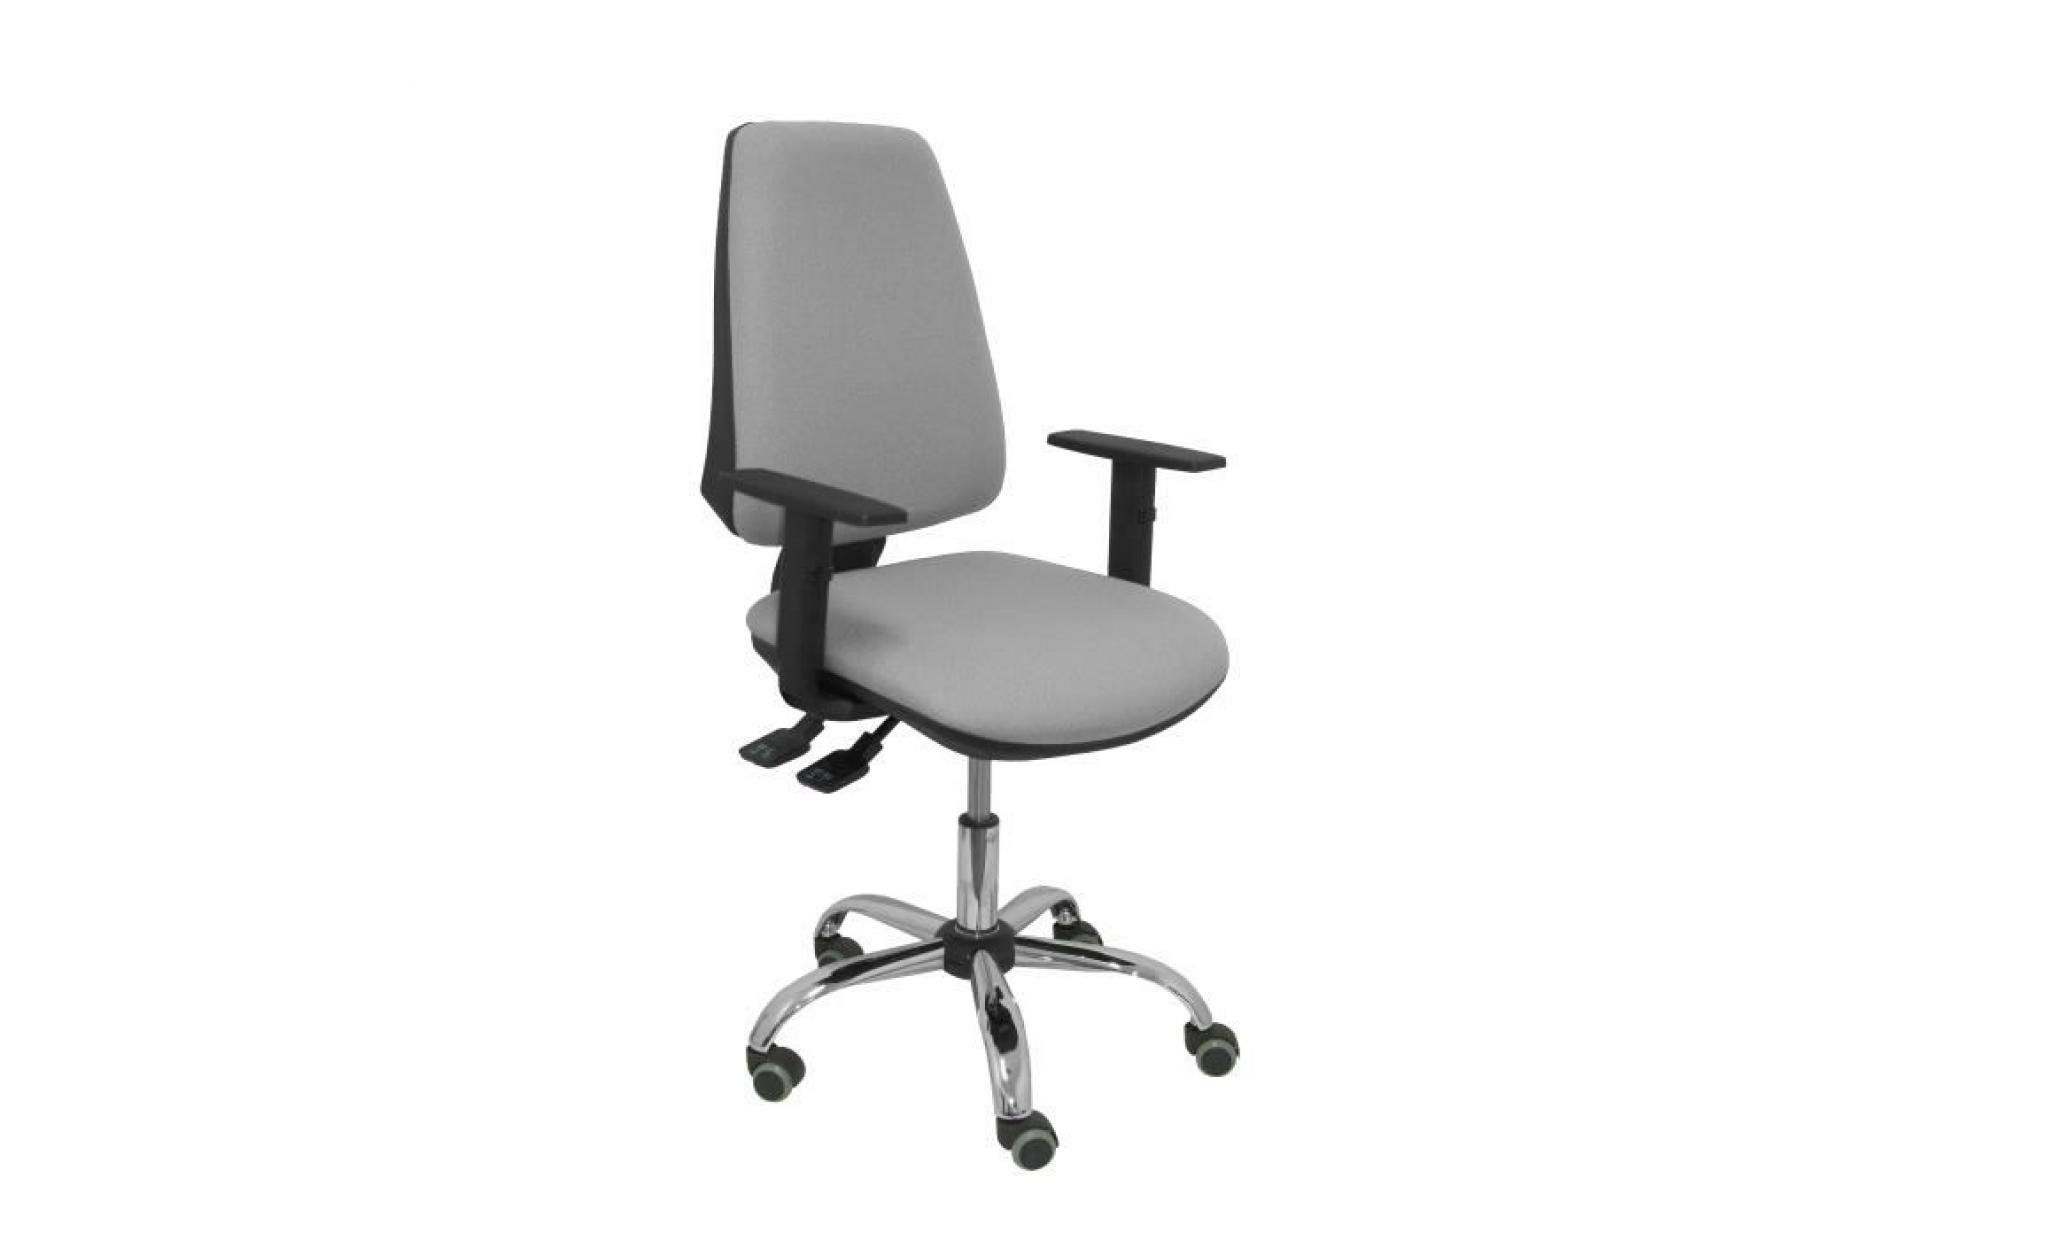 modèle elche   chaise de bureau ergonomique avec mécanisme synchrone et réglable en hauteur   assise et dossier rembourrés en tissu pas cher